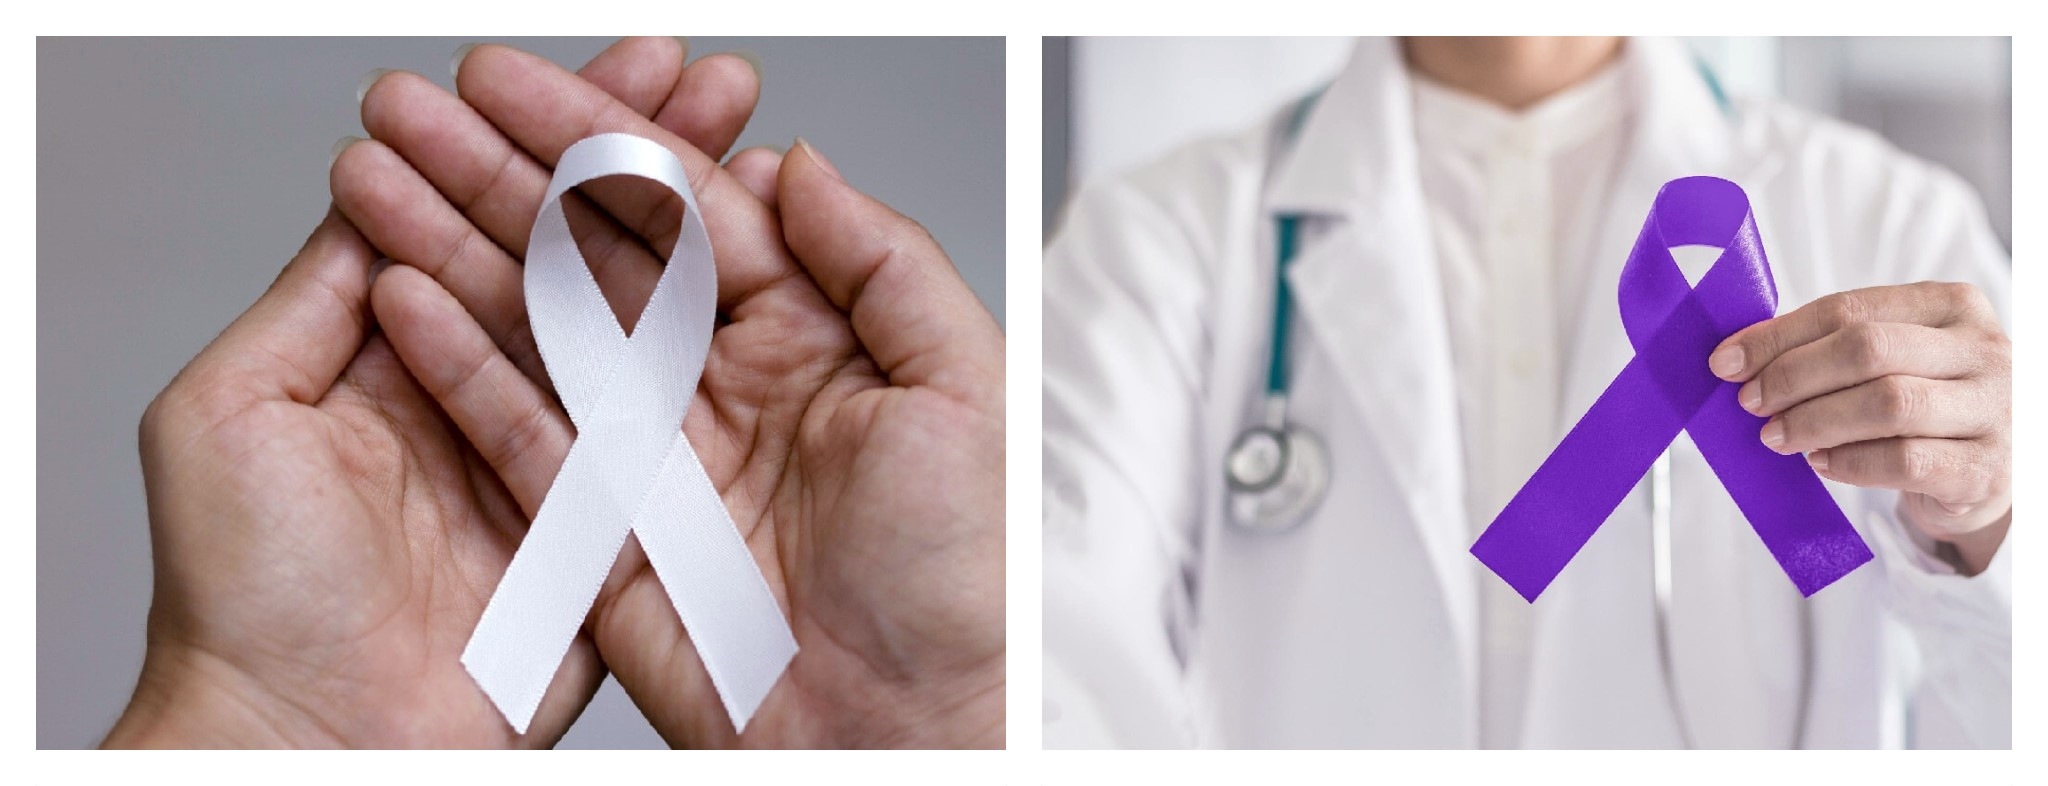 Janeiro Roxo e Janeiro Branco são campanhas para fomentar a conscientização sobre hanseníase e doenças mentais.